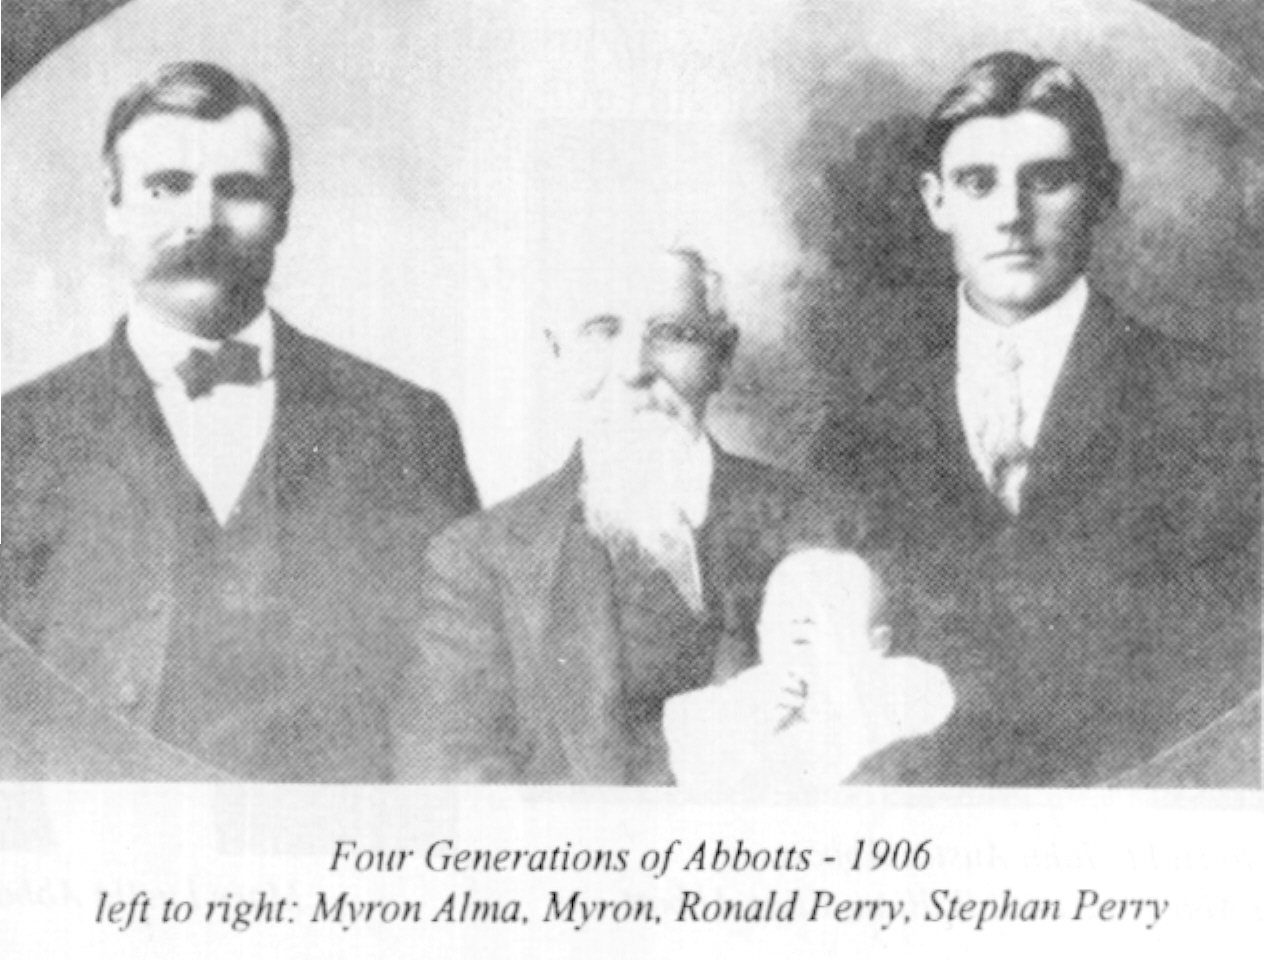 Four Generations of Abbotts - Myron Alma Abbott, Myron Abbott, Ronald Perry, Stephan Perry